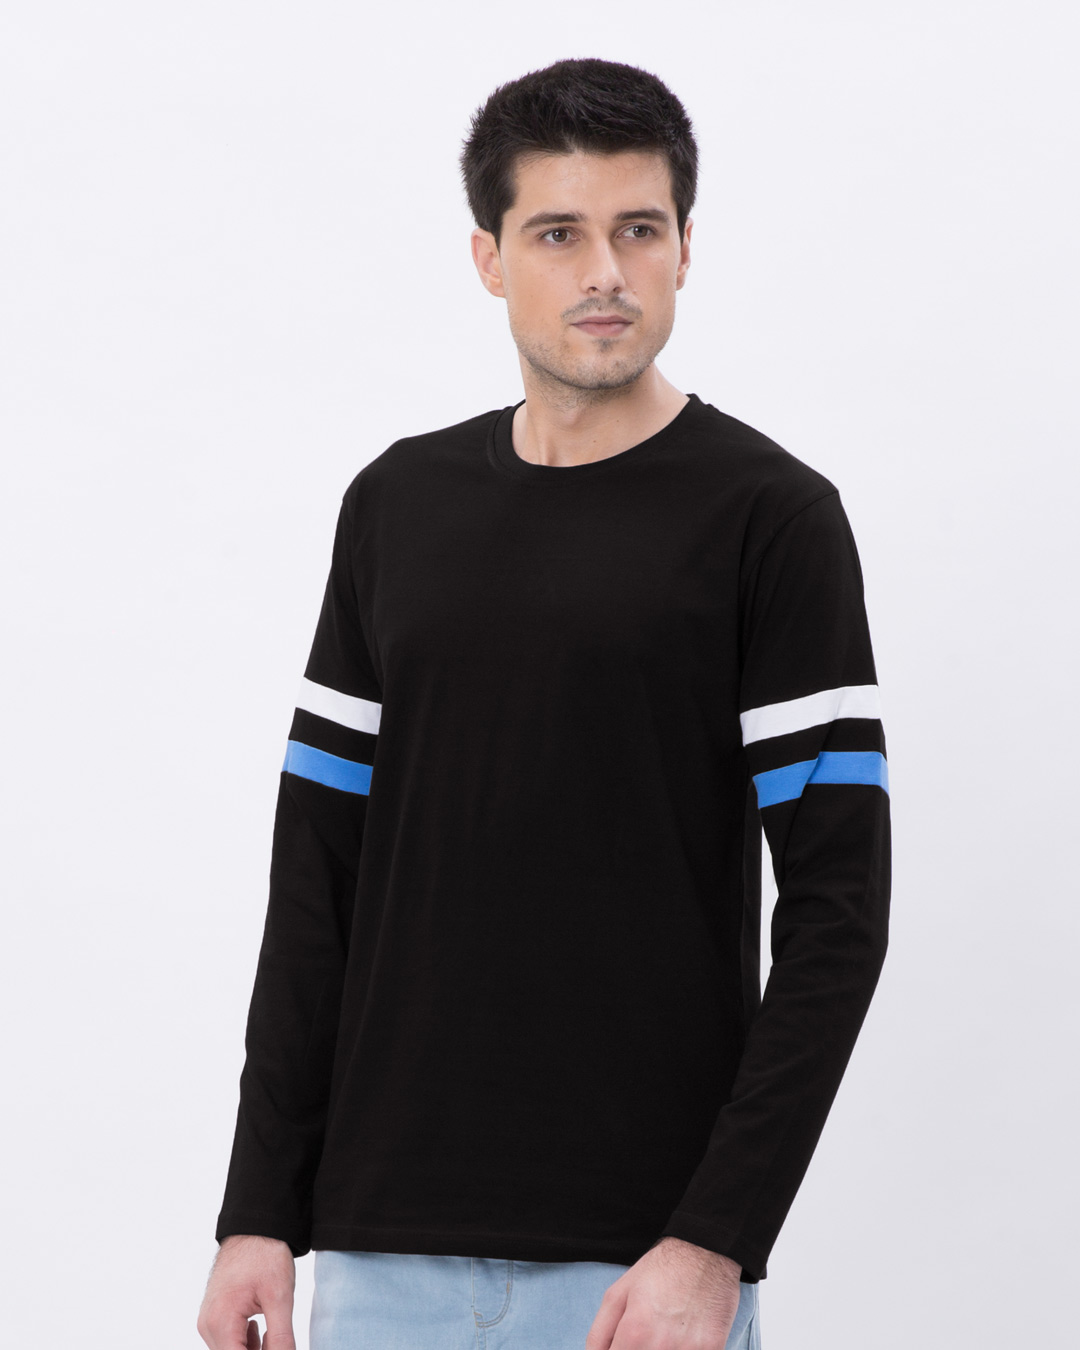 Buy Black-White-Capri Blue Sports Trim Full Sleeve T-Shirt for Men ...